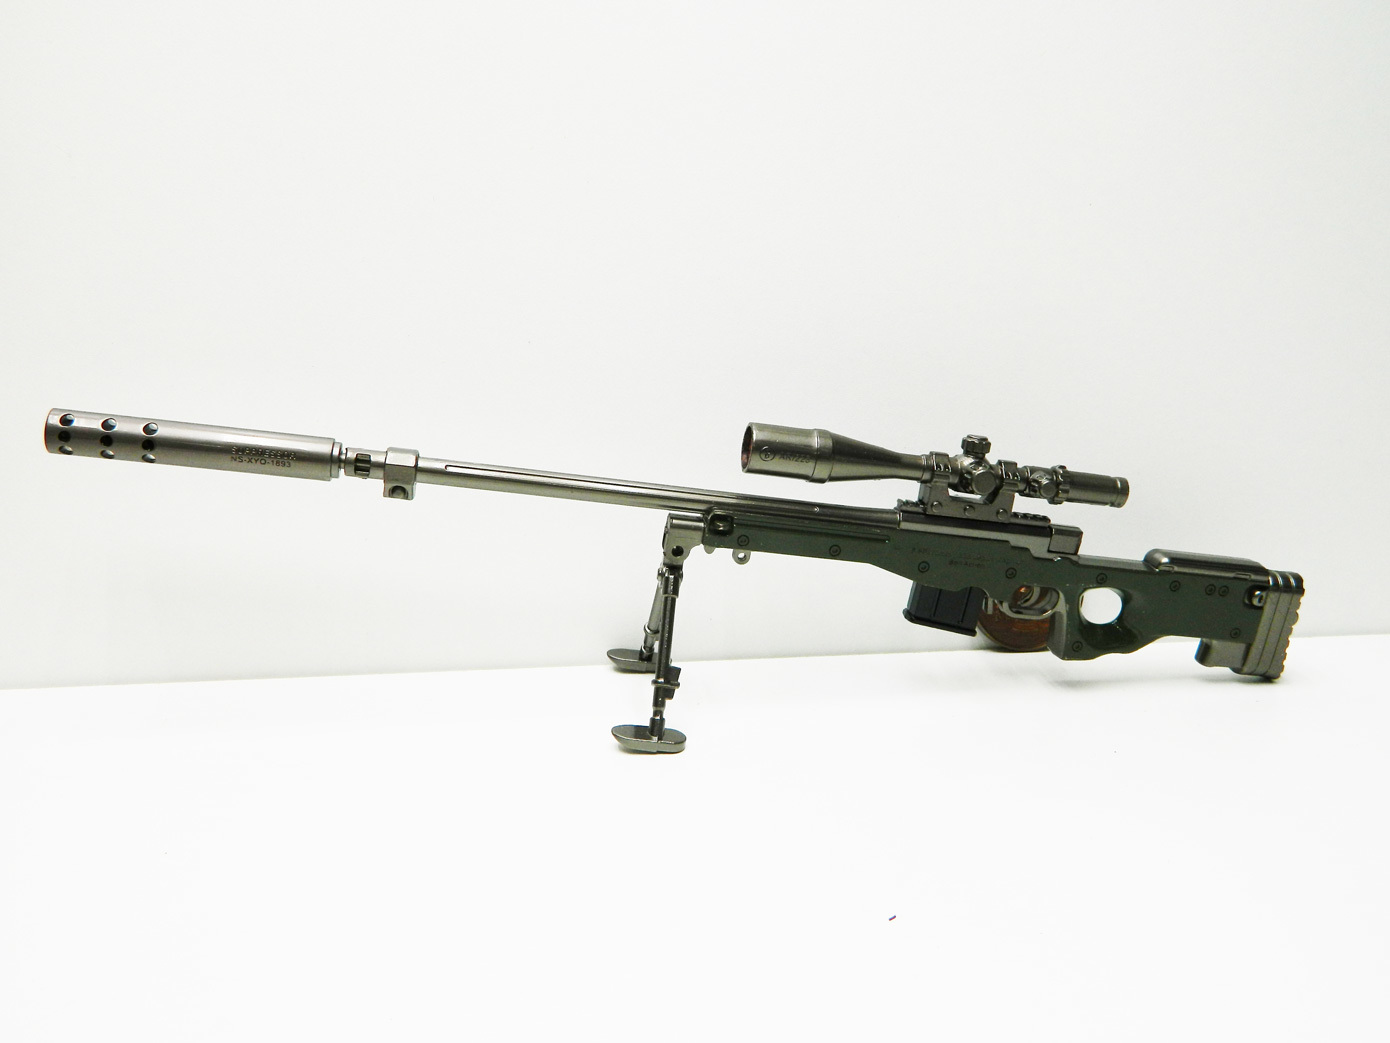 Awp винтовка модель фото 81